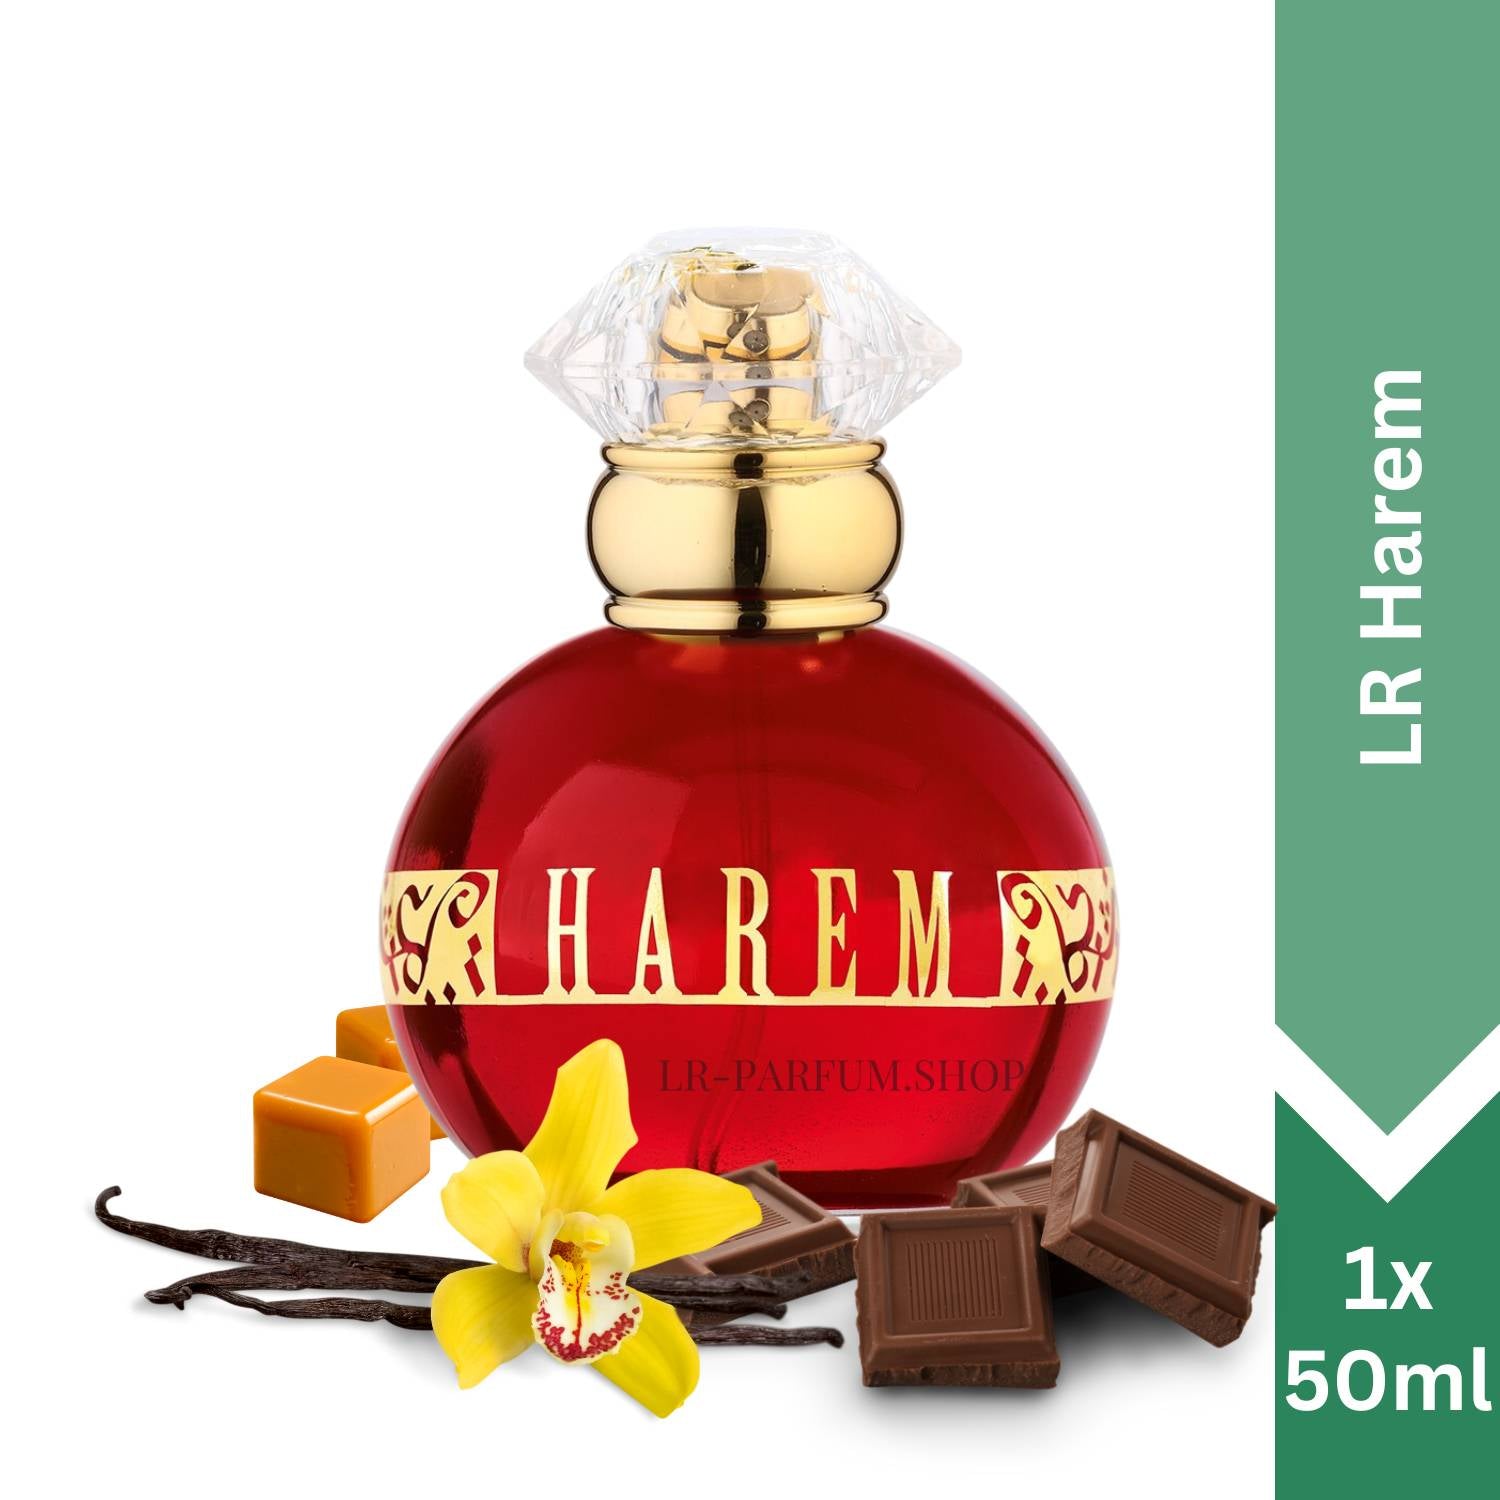 LR Harem - Eau de Parfum 50ml - LR-Parfum.shop